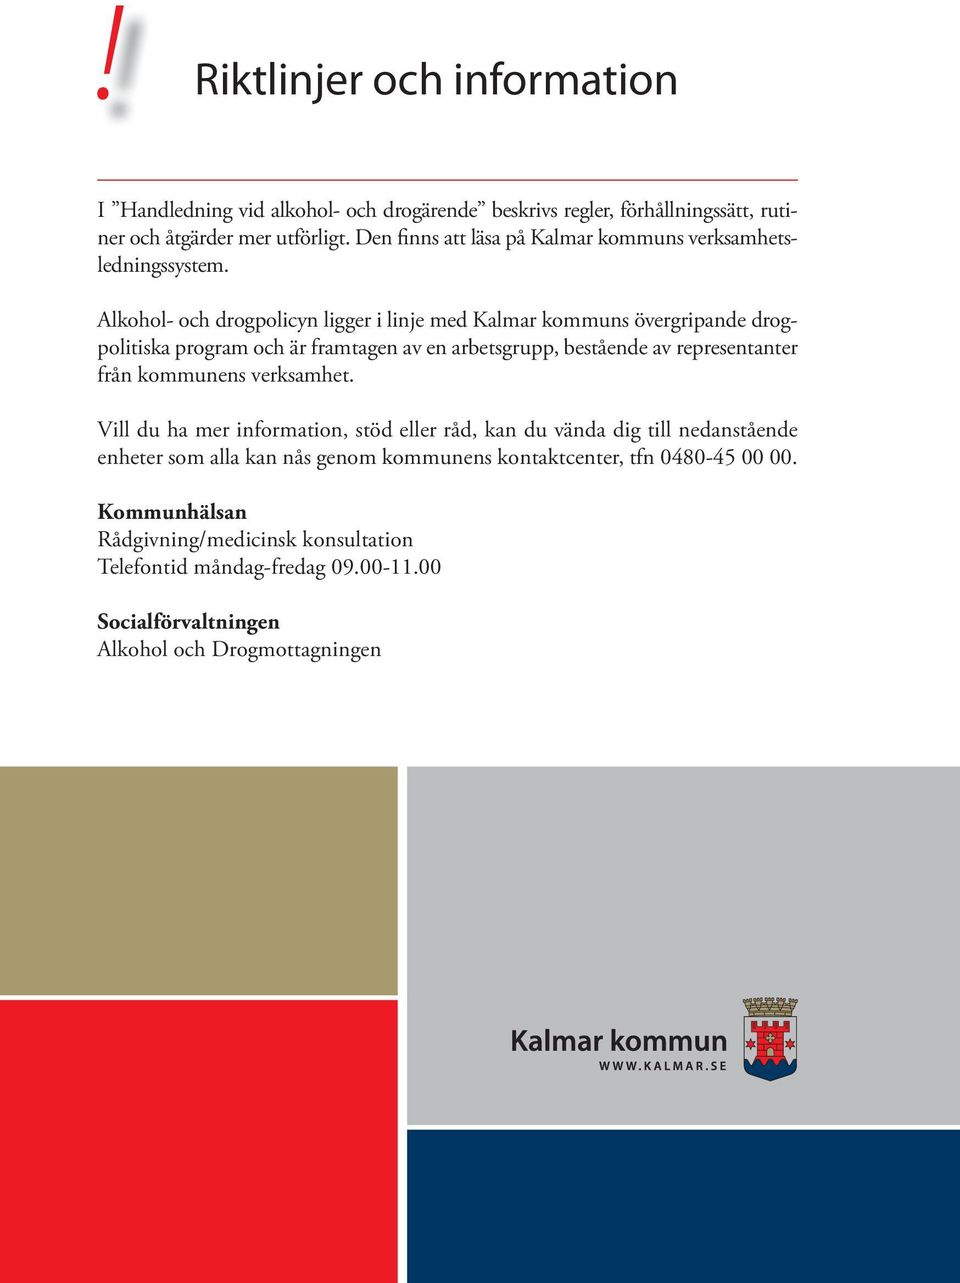 Alkohol- och drogpolicyn ligger i linje med Kalmar kommuns övergripande drogpolitiska program och är framtagen av en arbetsgrupp, bestående av representanter från